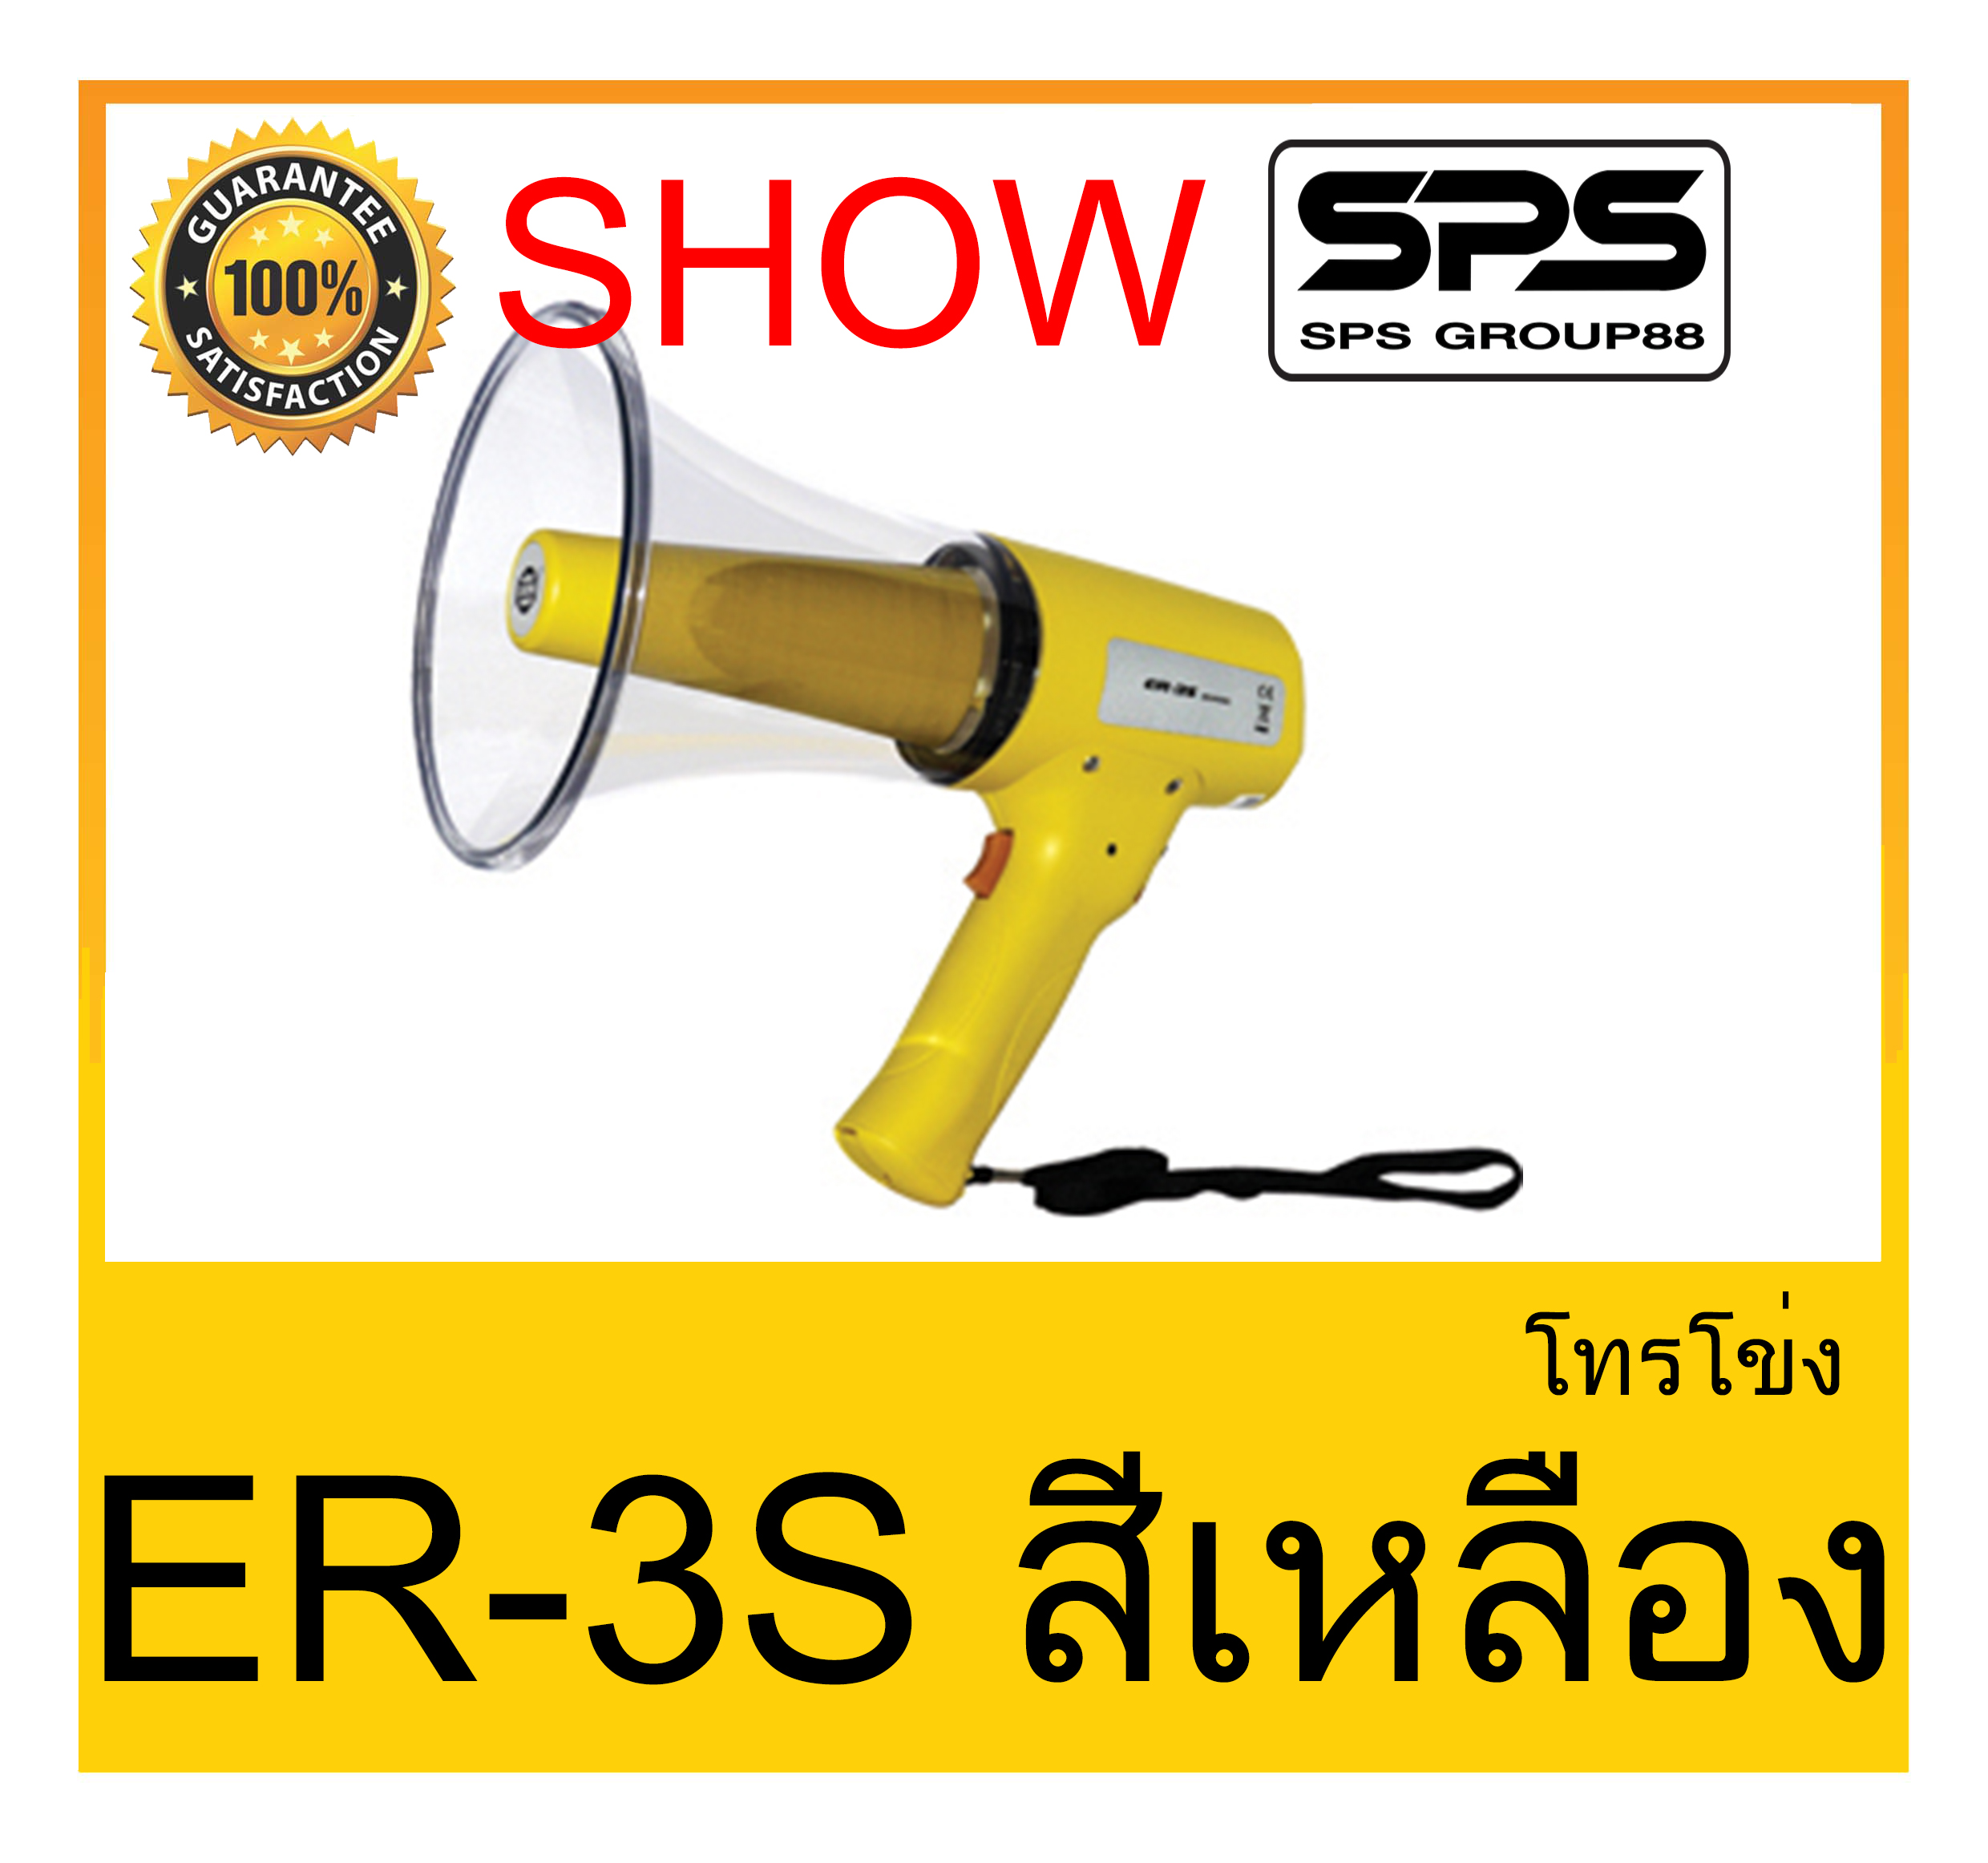 MEGAPHONE โทรโข่ง รุ่น ER-3S สีเหลือง ยี่ห้อ SHOW ใช้ดี ใช้ทน ของแท้ ราคาถูก พร้อมส่ง